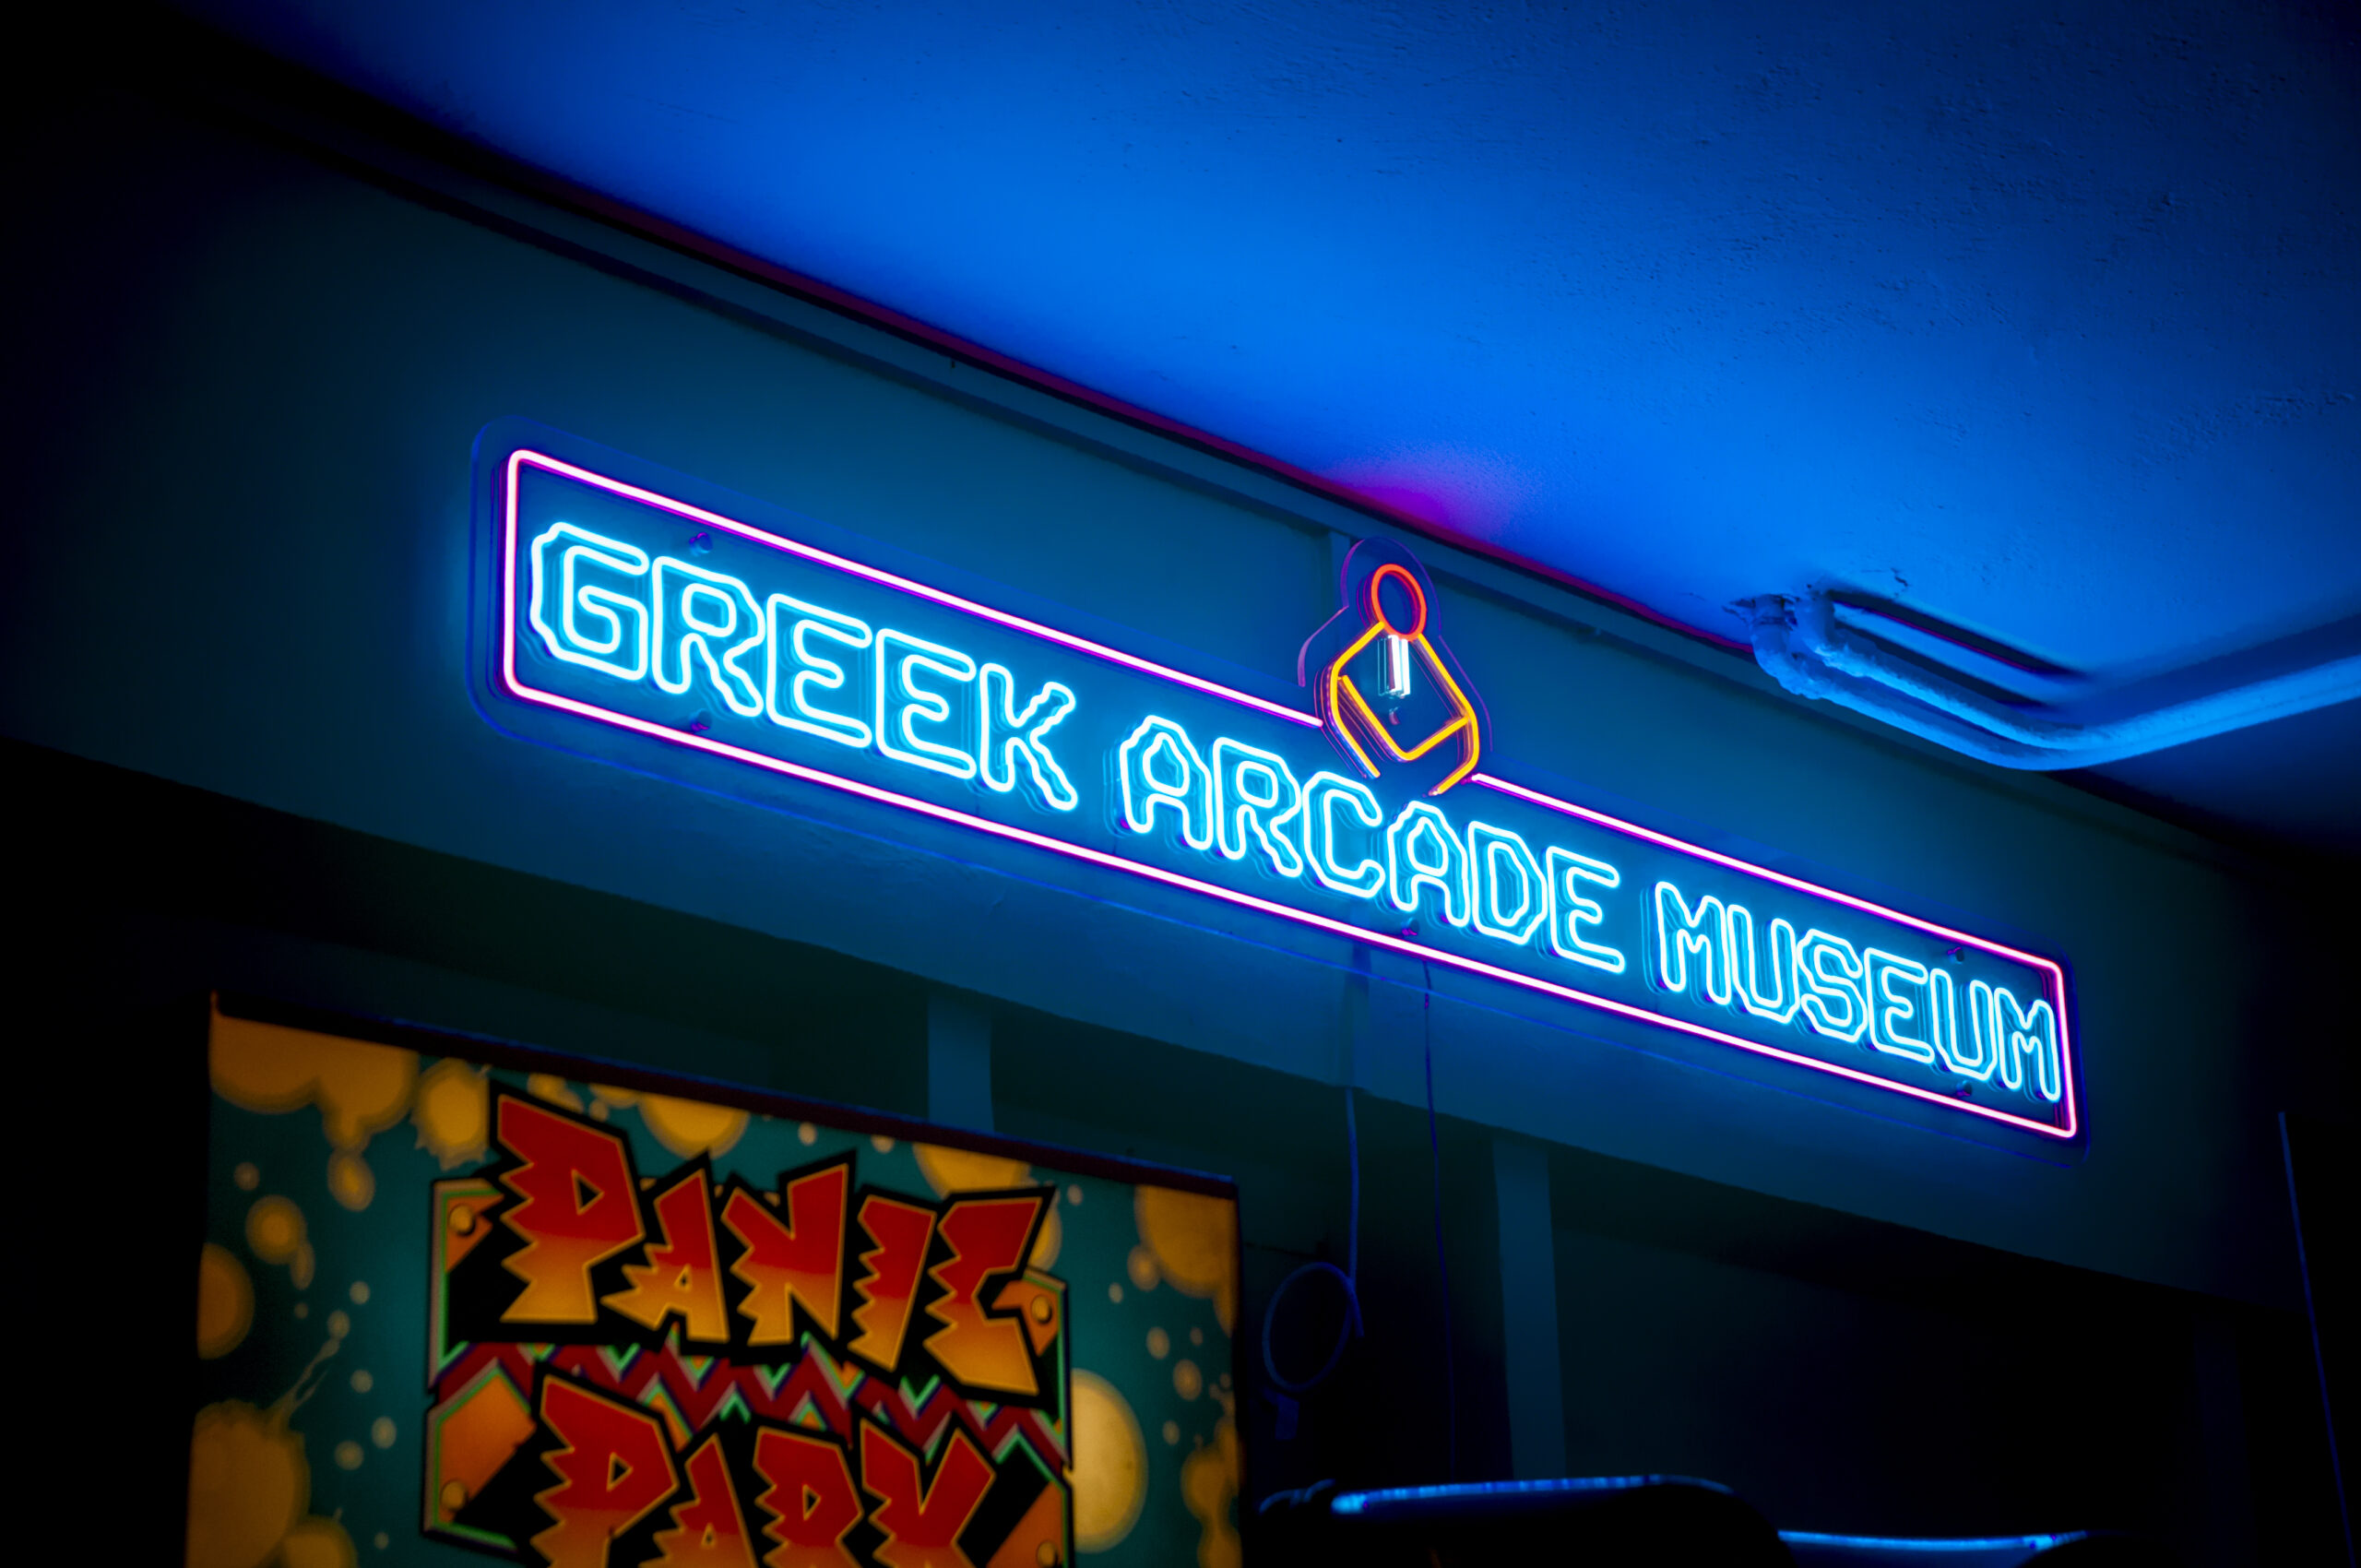 ελάσαμε, φωνάξαμε, φωτογραφίσαμε και φωτογραφηθήκαμε, λατρέψαμε αυτό το ταξίδι στον χρόνο από κάθε άποψη. Πάμε; Greek Arcade Museum: Ταξίδι στον χρόνο με Arcade Games